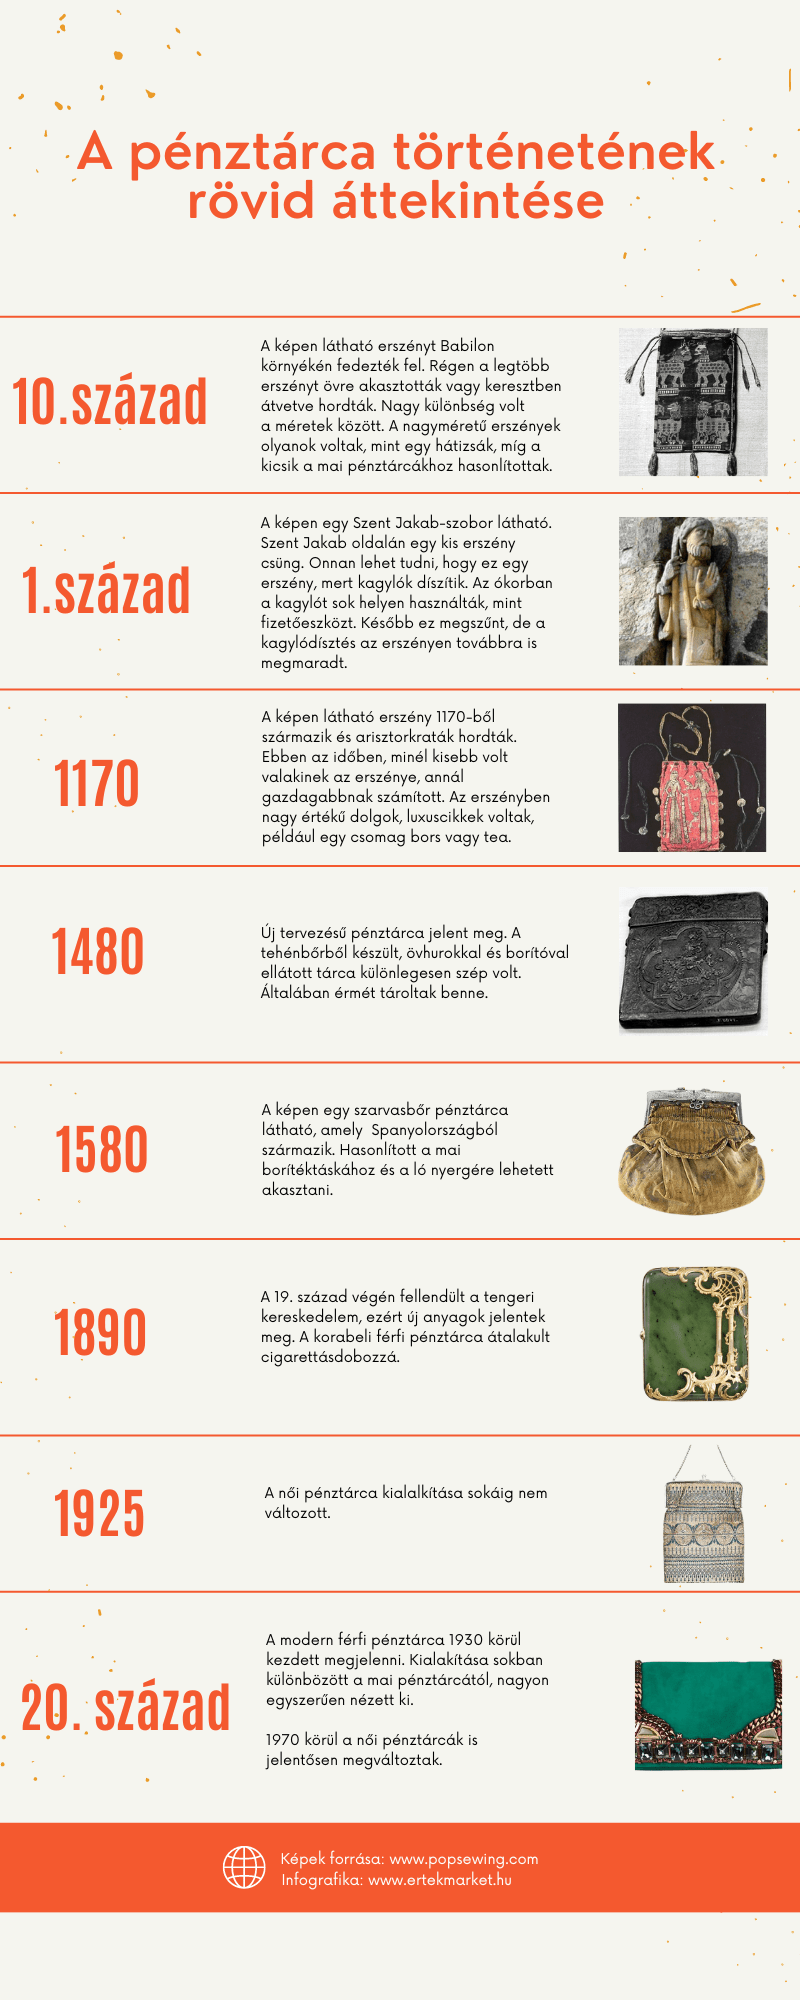 A pénztárca története